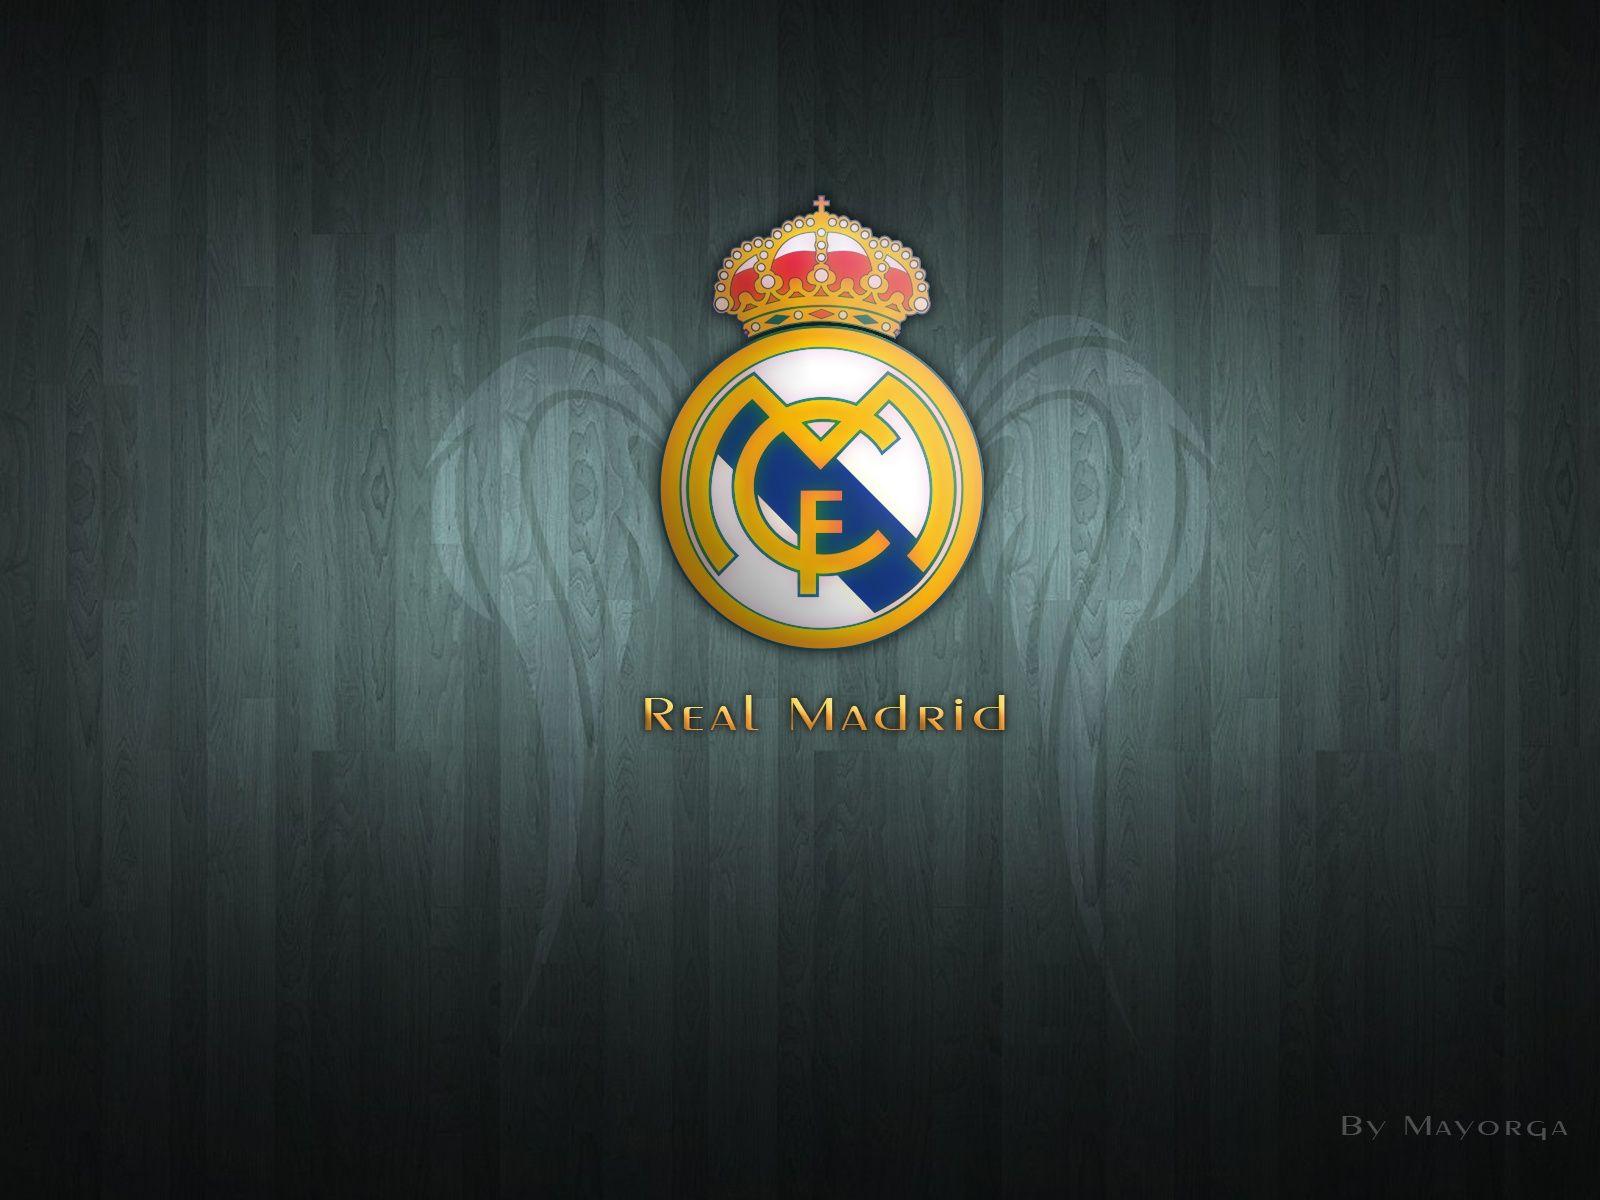 Real Madrid Logo Wallpaper HD. Real madrid logo, Wallpaper